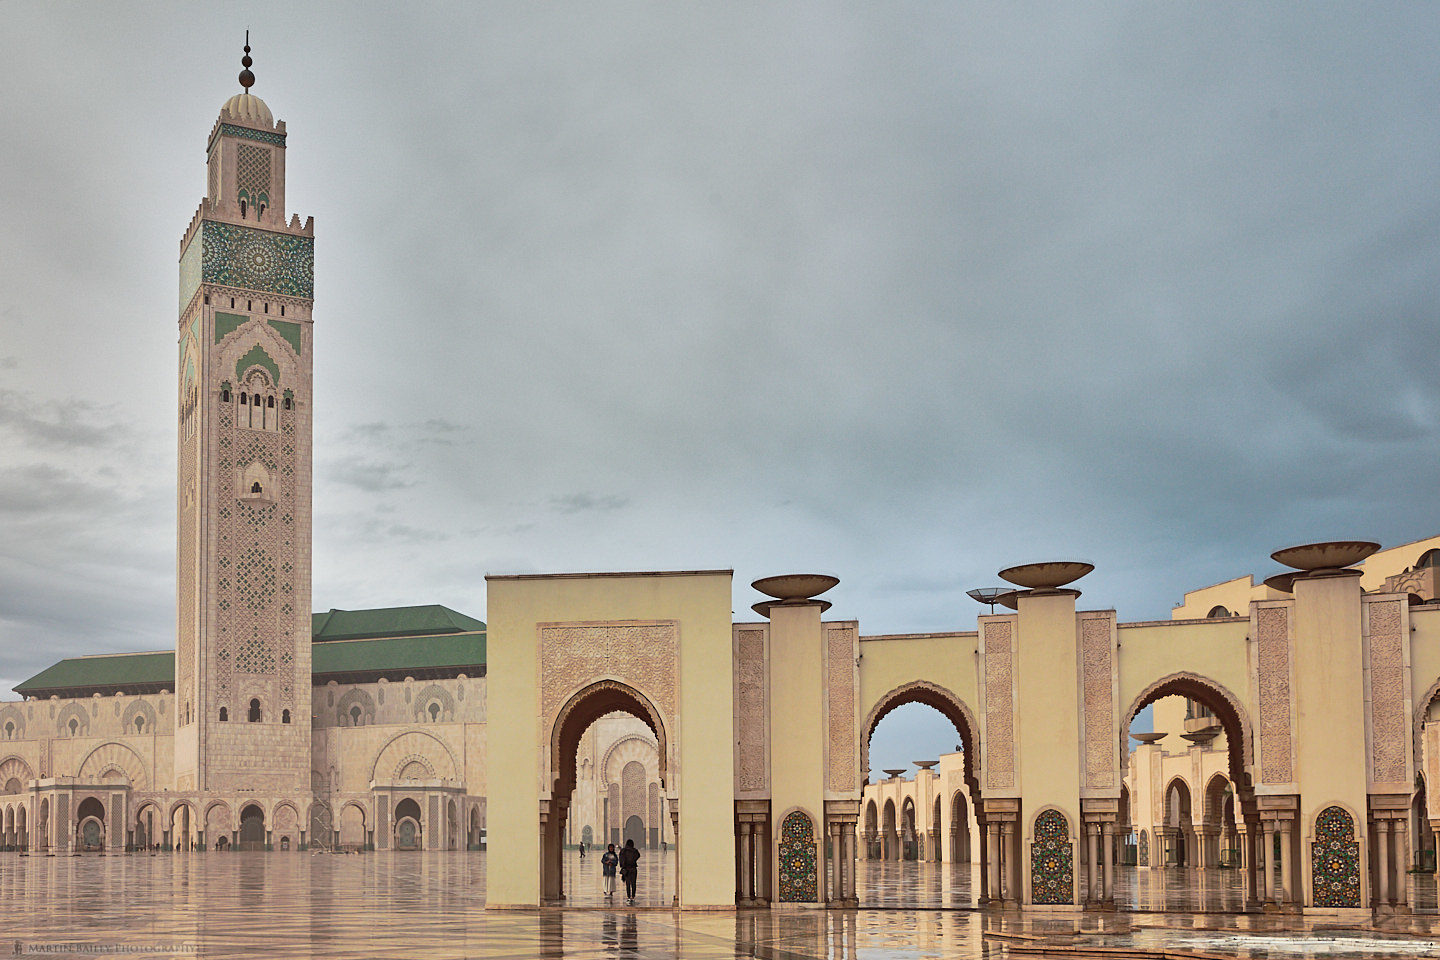 Hussan II Mosque in Rain